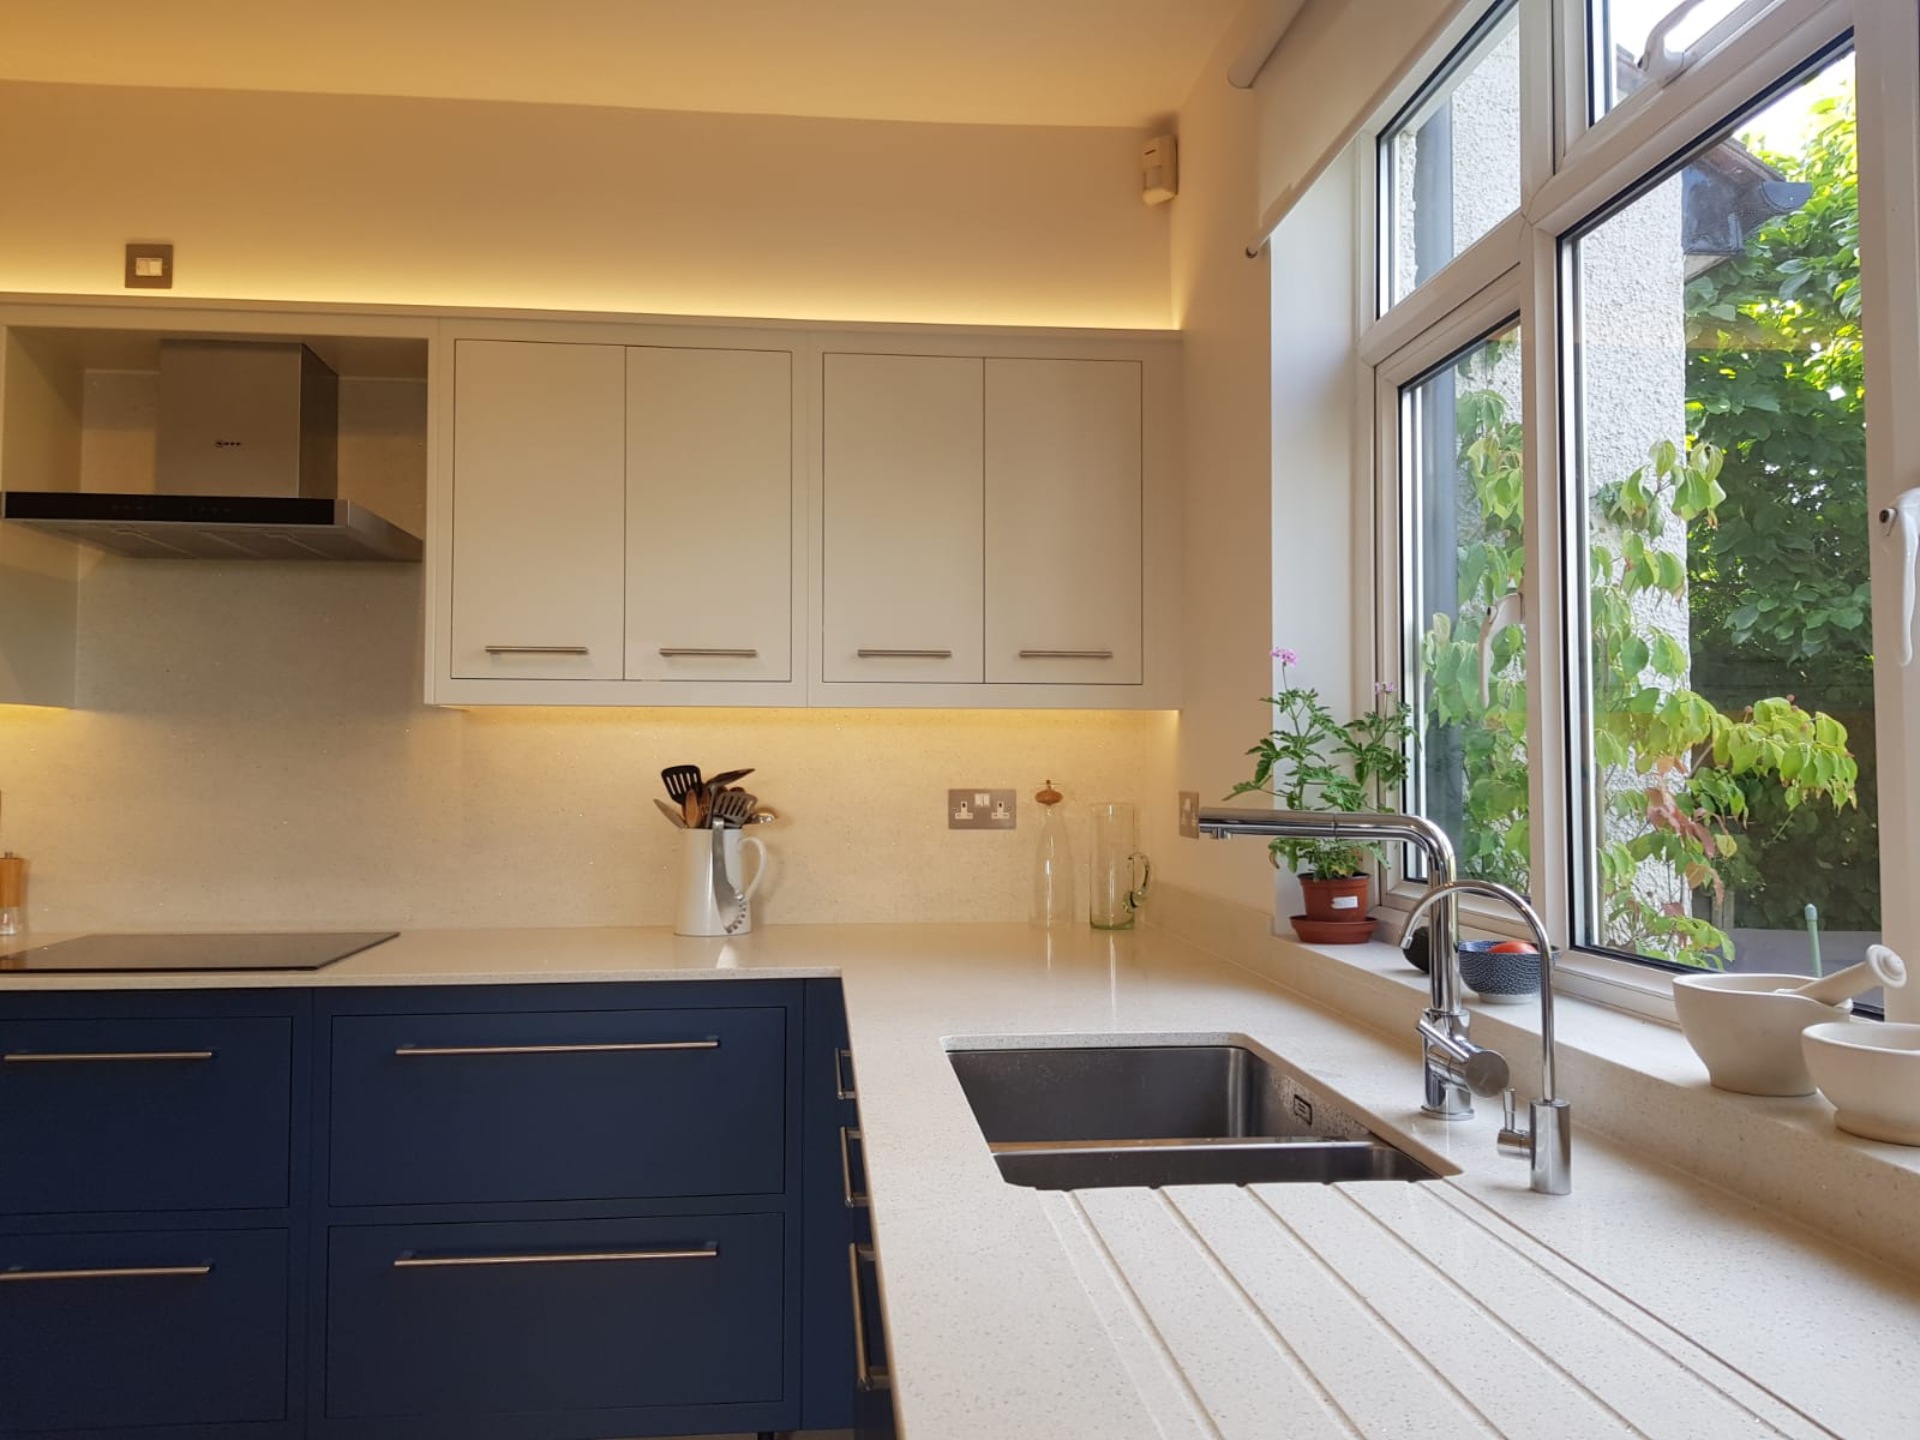 ecorok - luxury kitchen surface